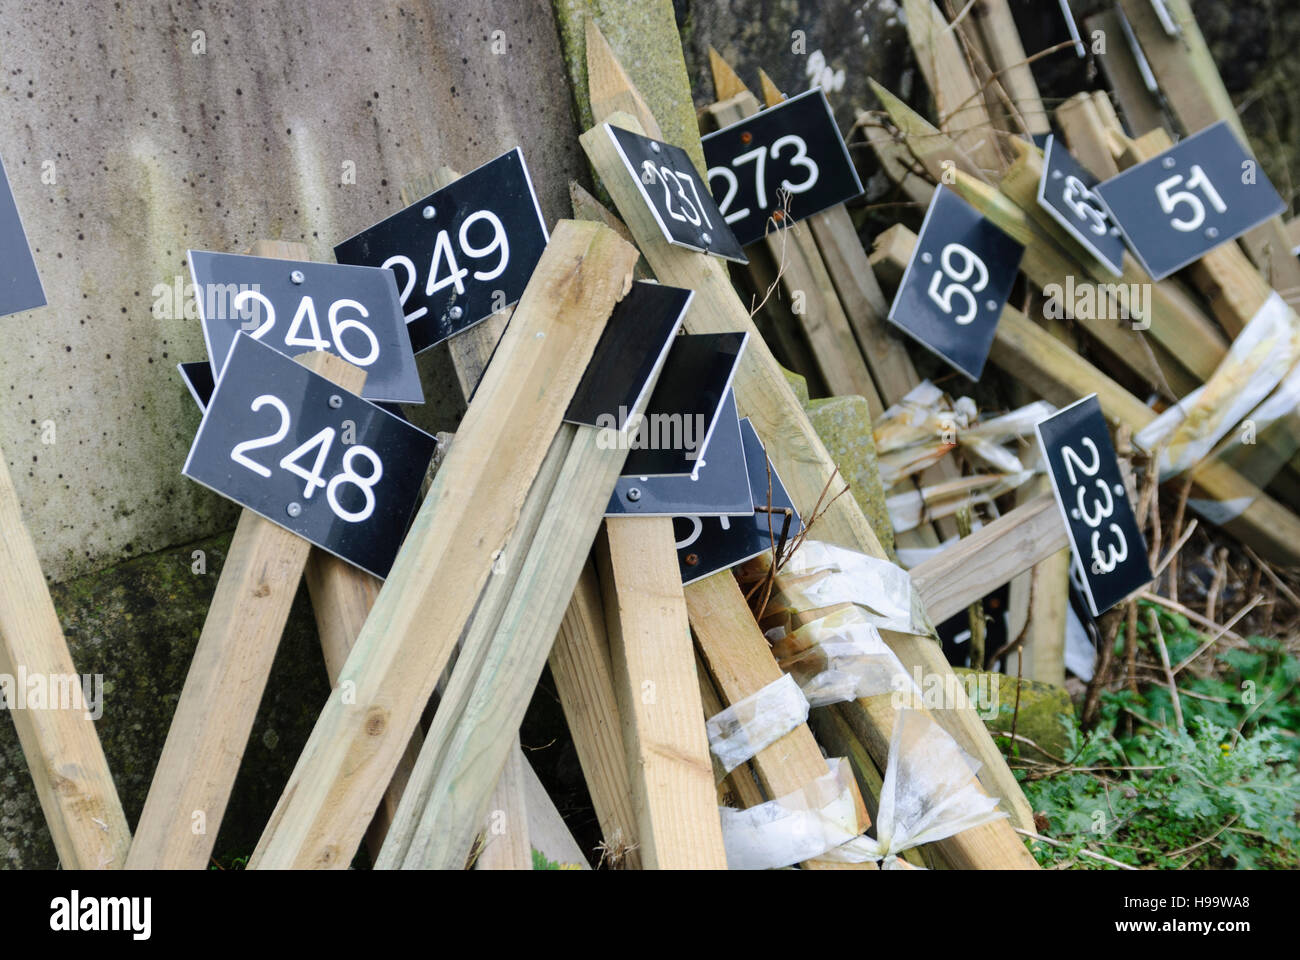 Piquets en bois avec panneaux numérotés afin d'identifier les tombes dans un cimetière. Banque D'Images